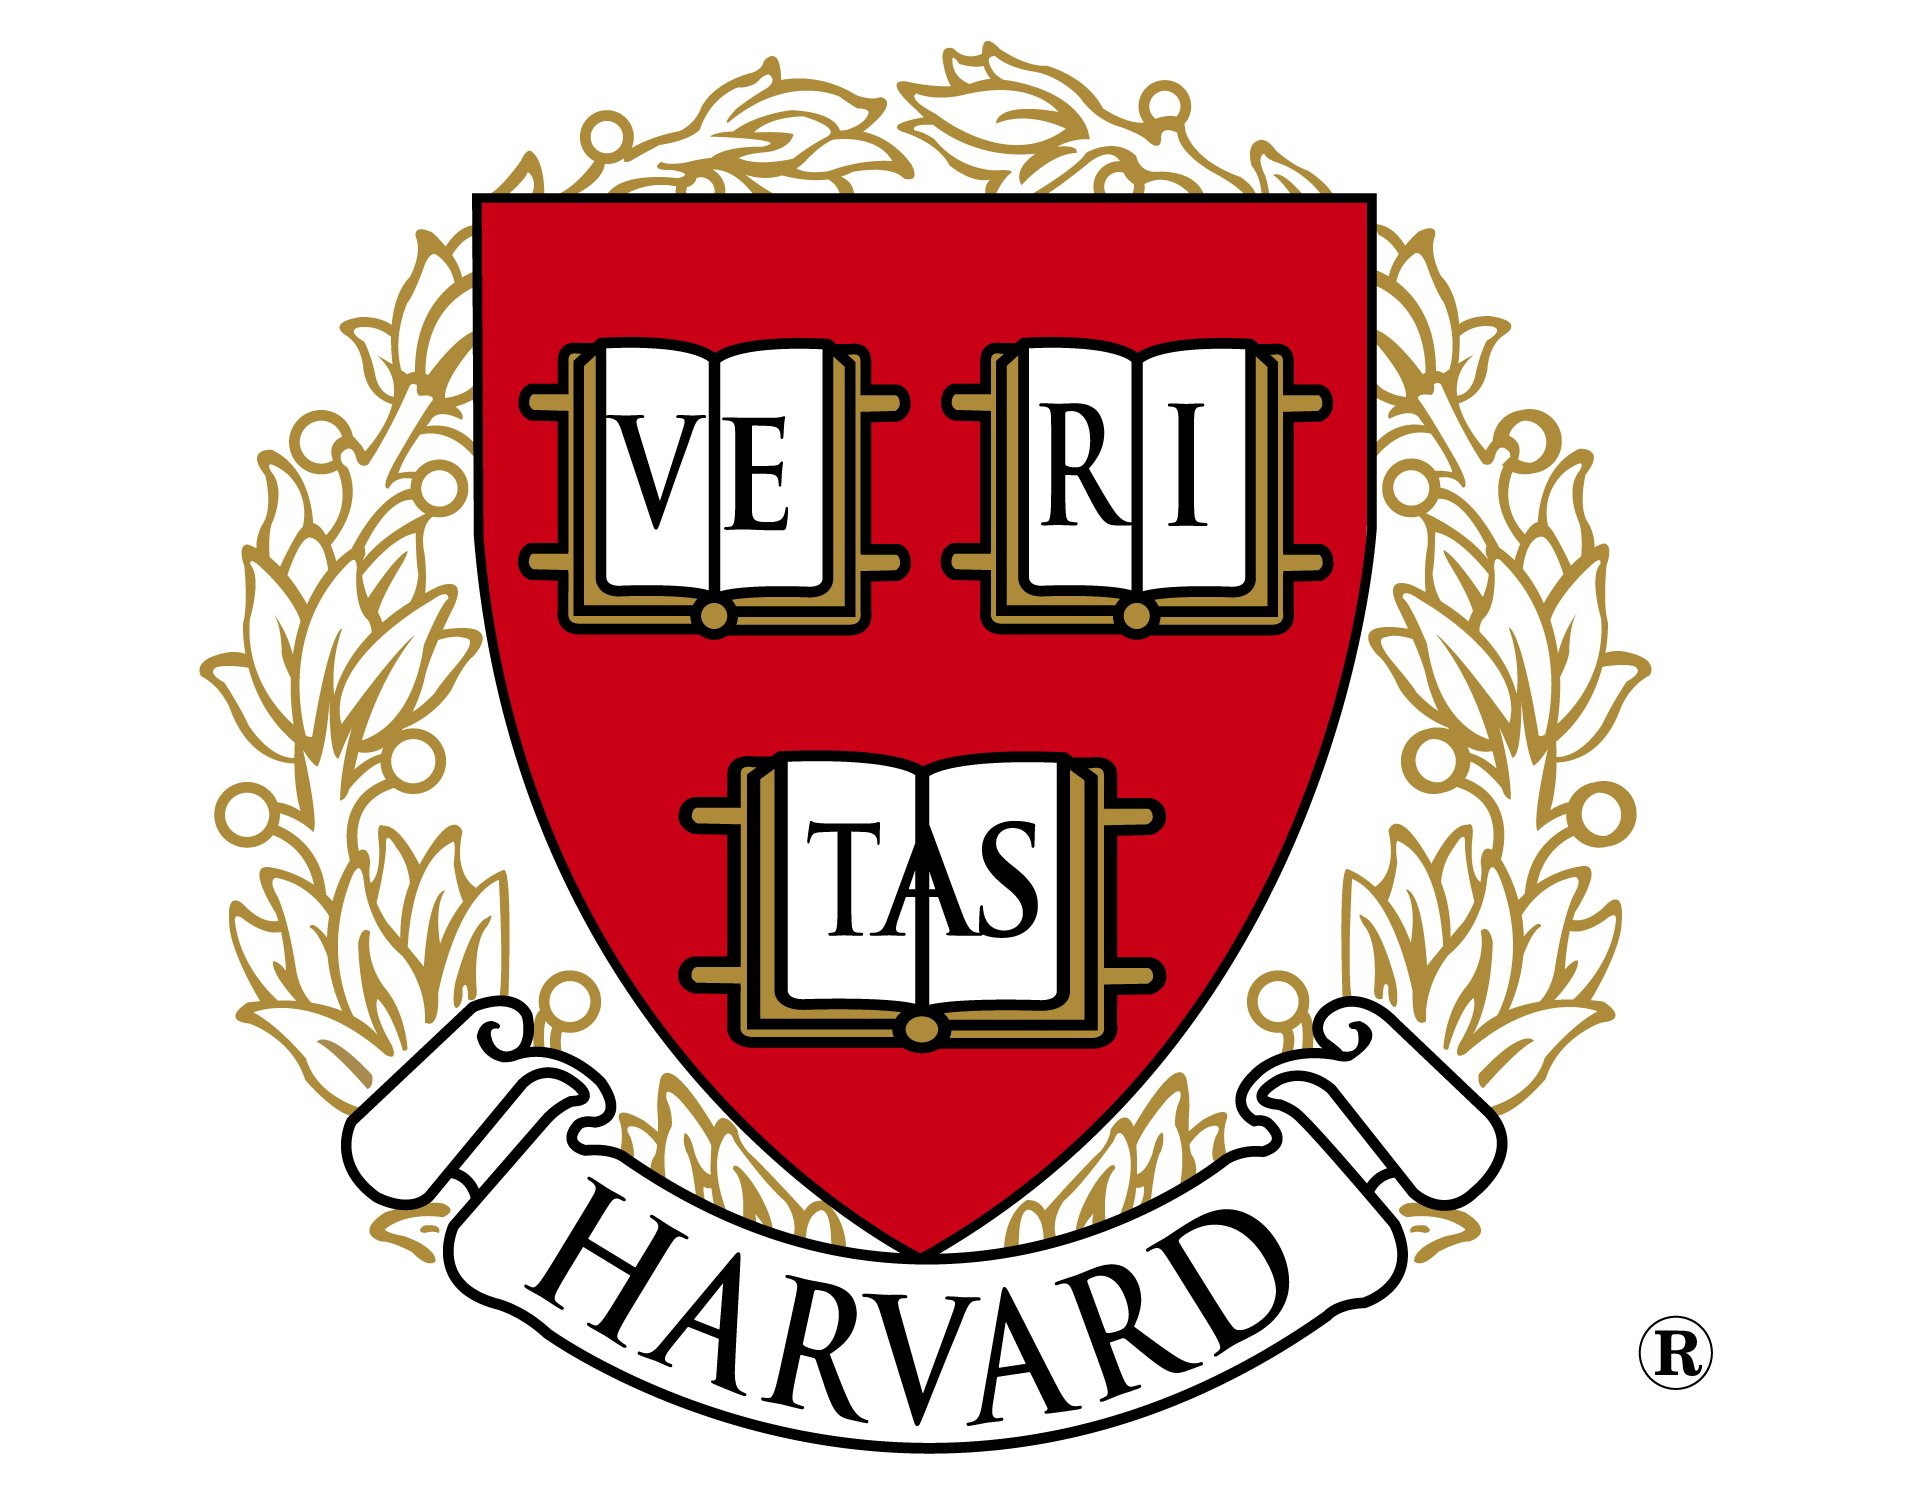 Harvard University Official Logo